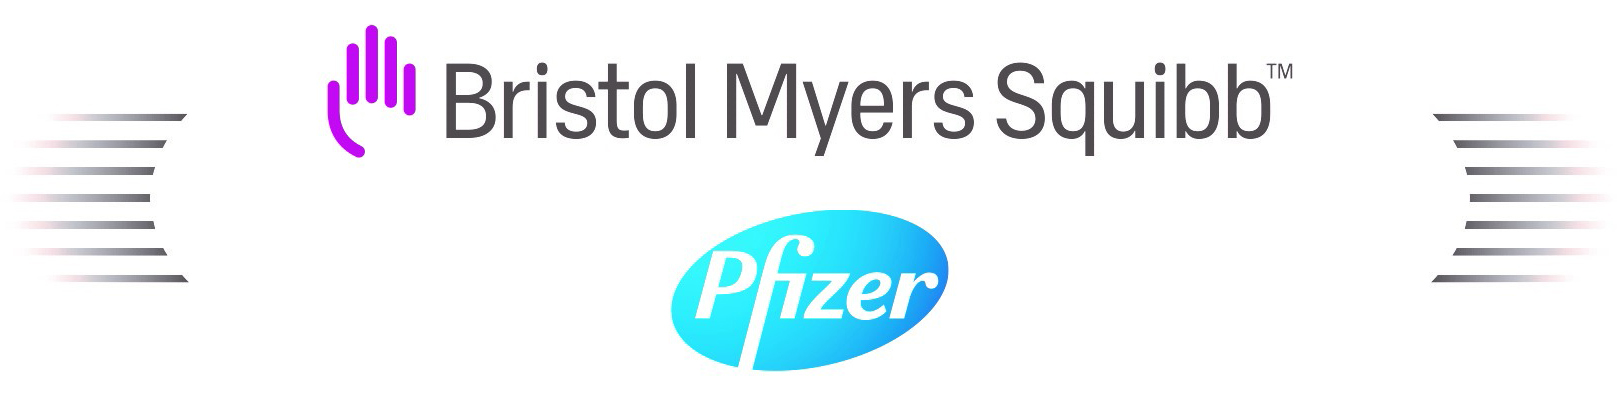 BMS Pfizer stacked Logo hochformat